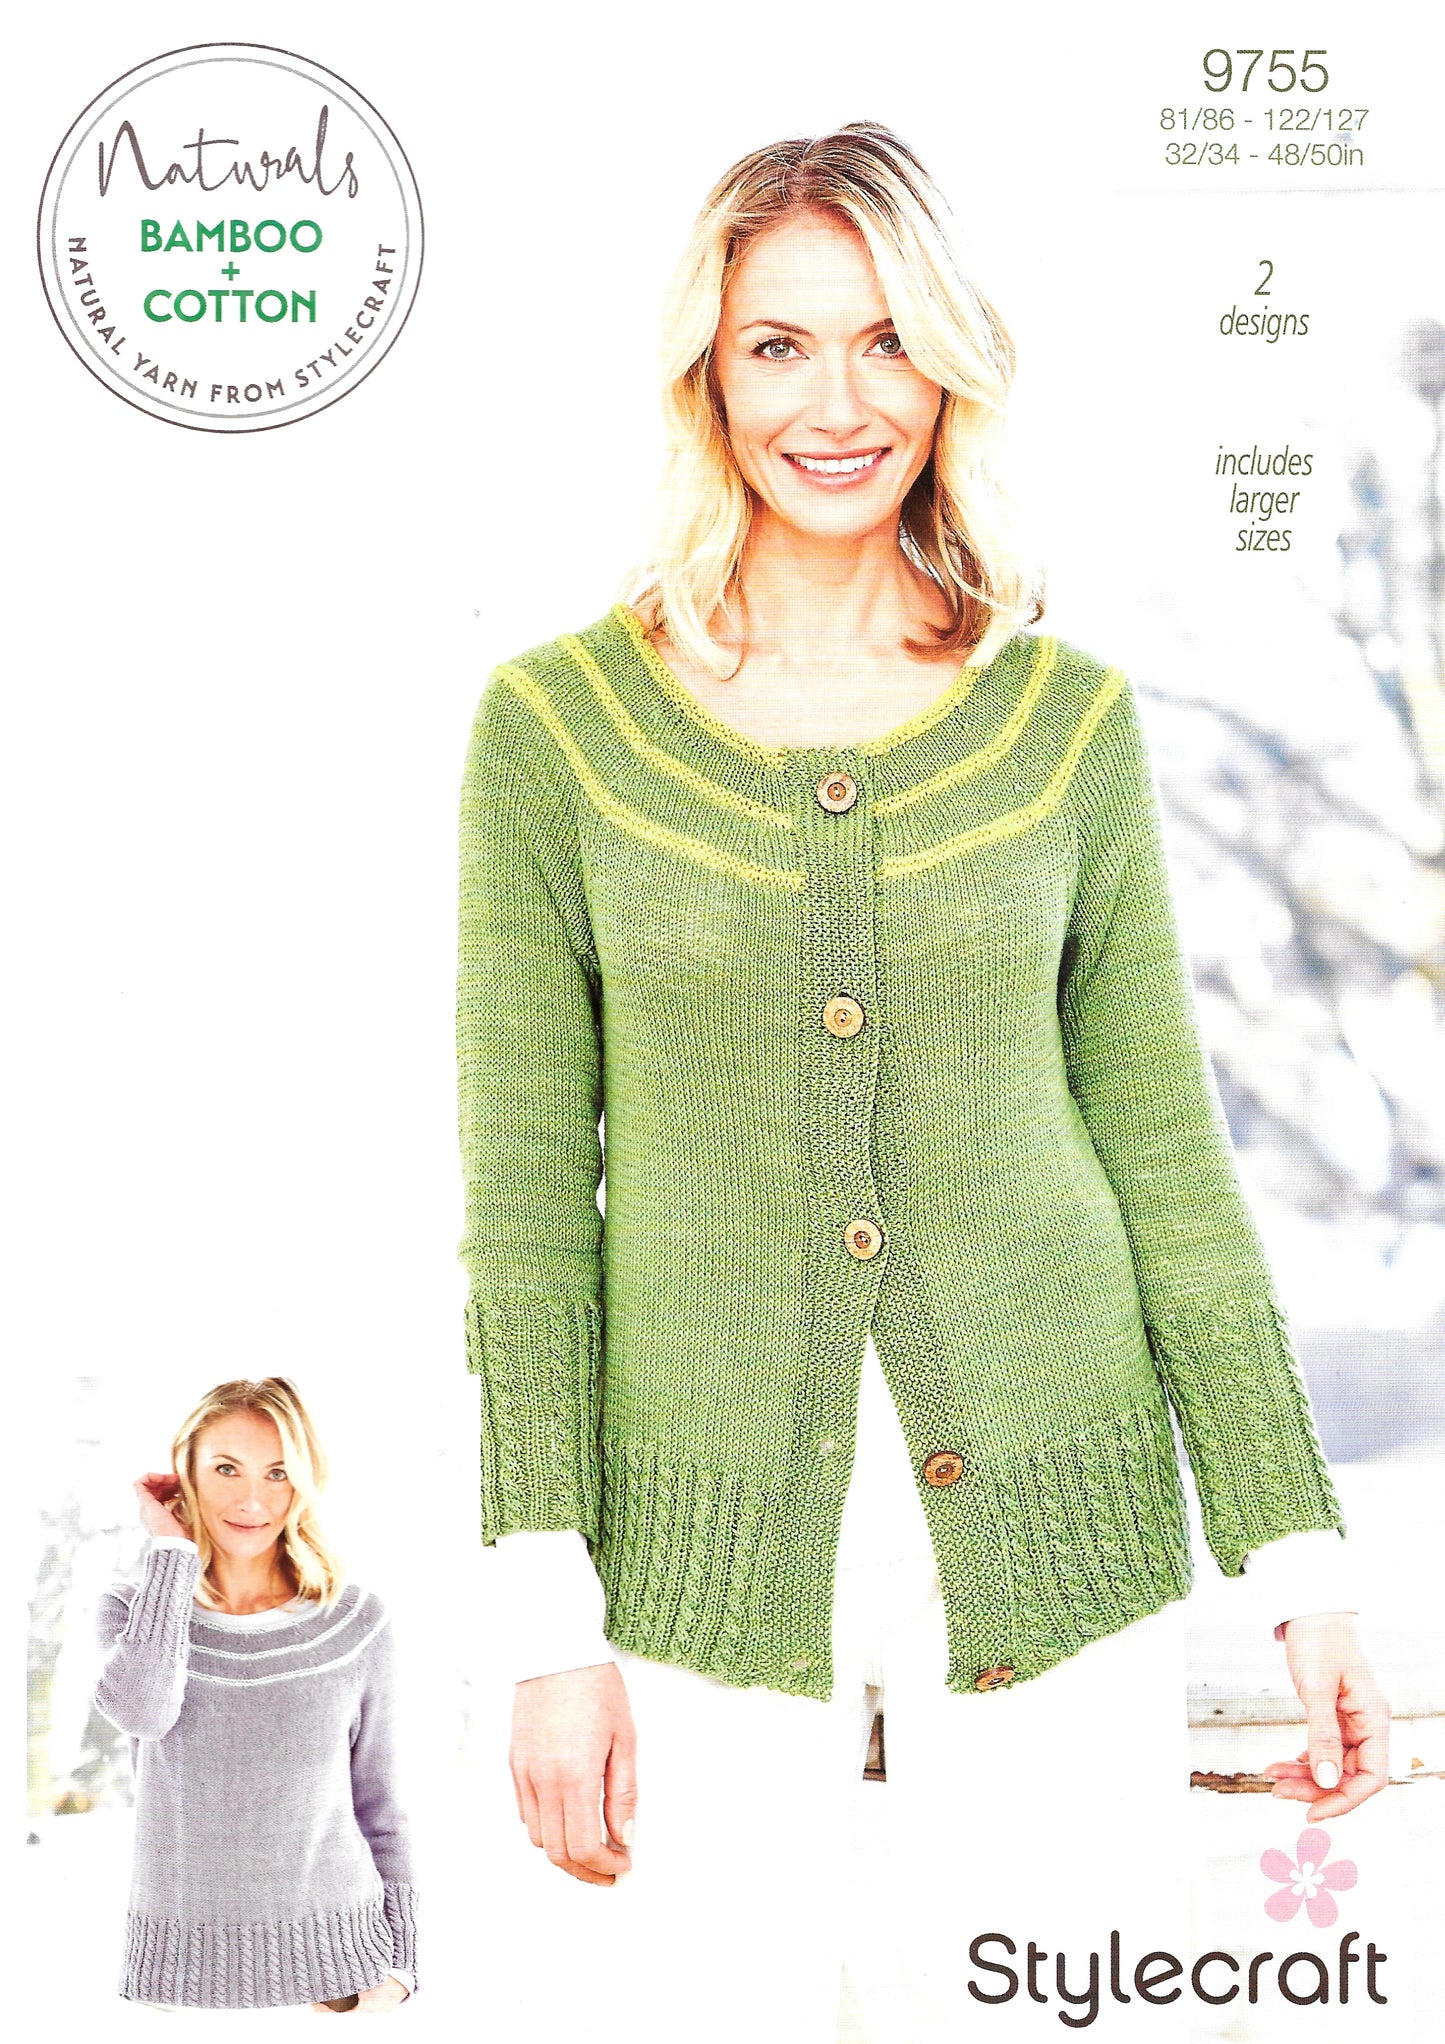 9755 Stylecraft knitting pattern. Lady's sweater cardigan. Double Knitting